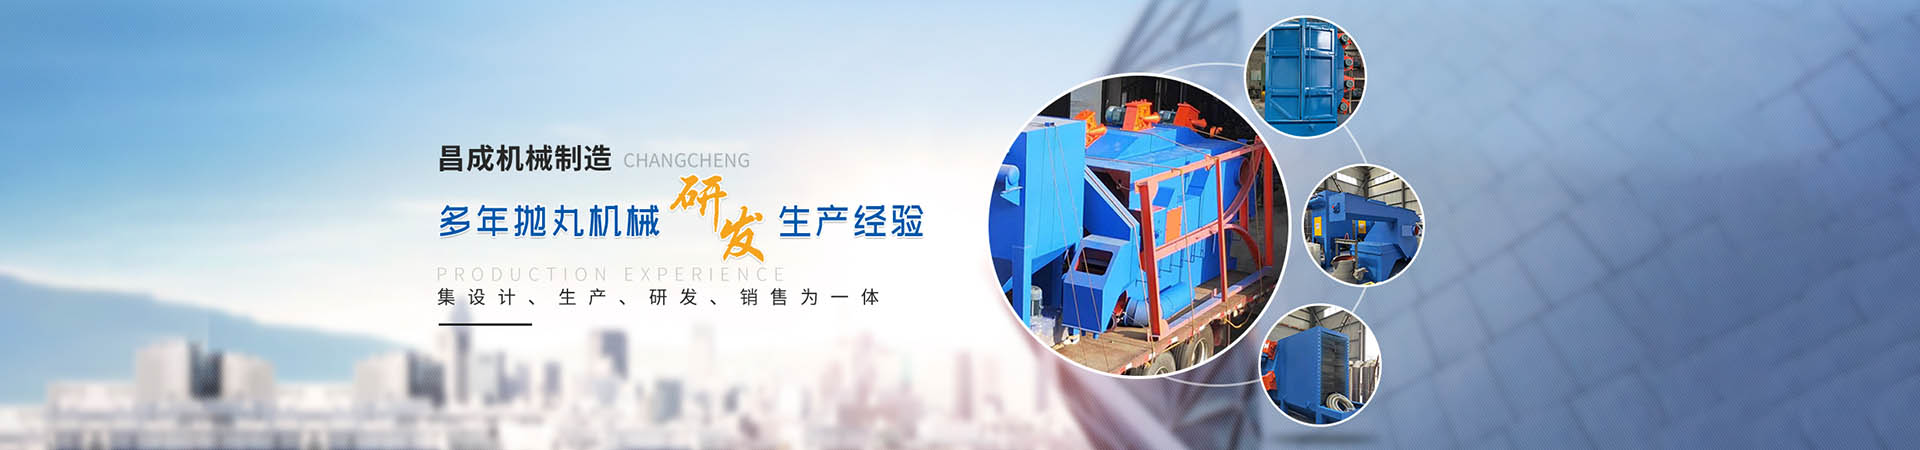 钢板通过式天博在线官网(中国)科技有限公司